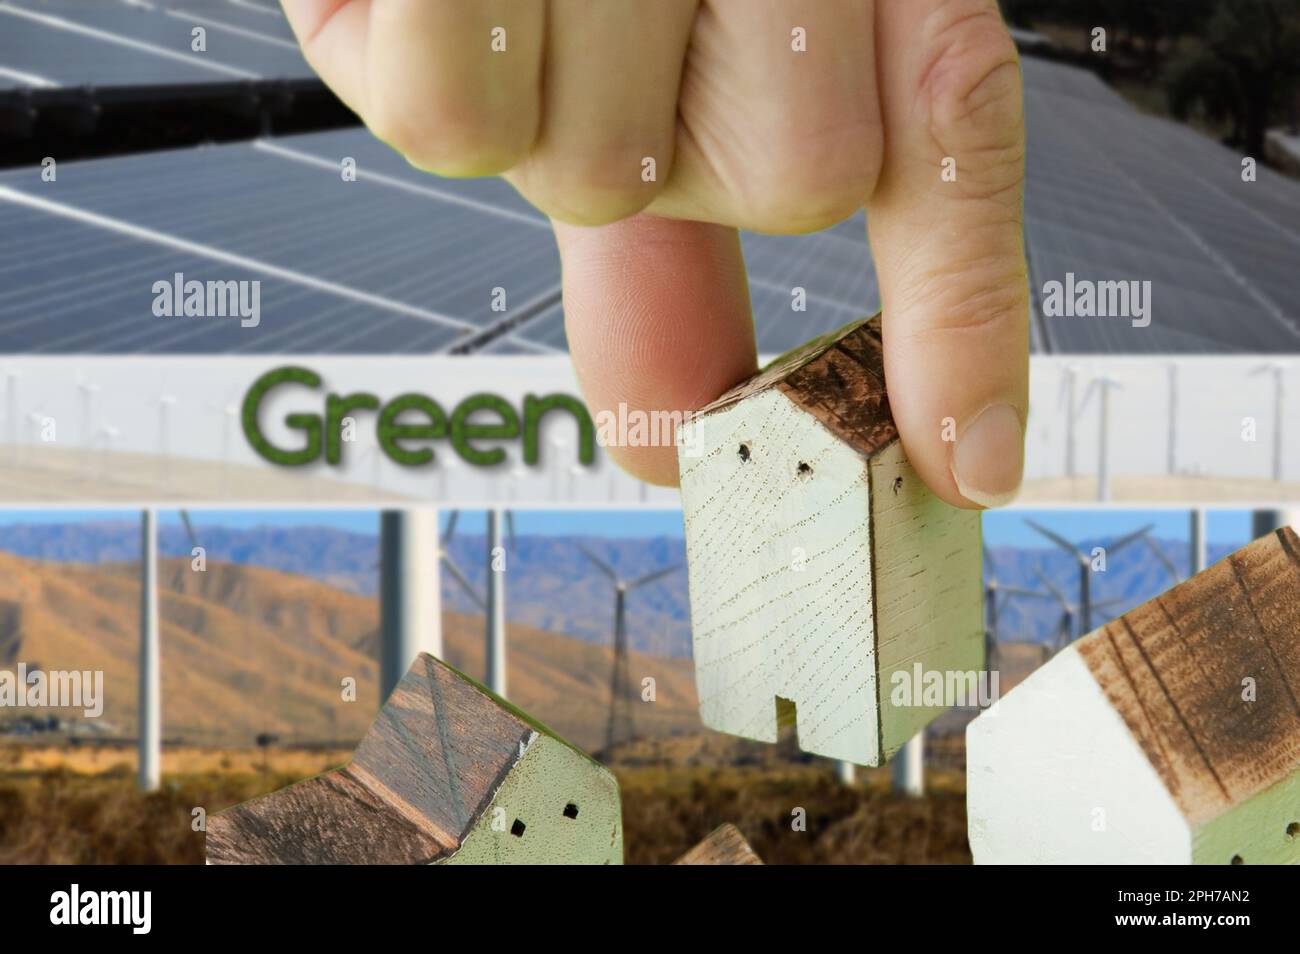 Concetto di ecologia - Un'immagine metaforica ecologica a tema - concetto del mondo verde, risparmio dell'ambiente, salvataggio del pianeta pulito (3) Foto Stock